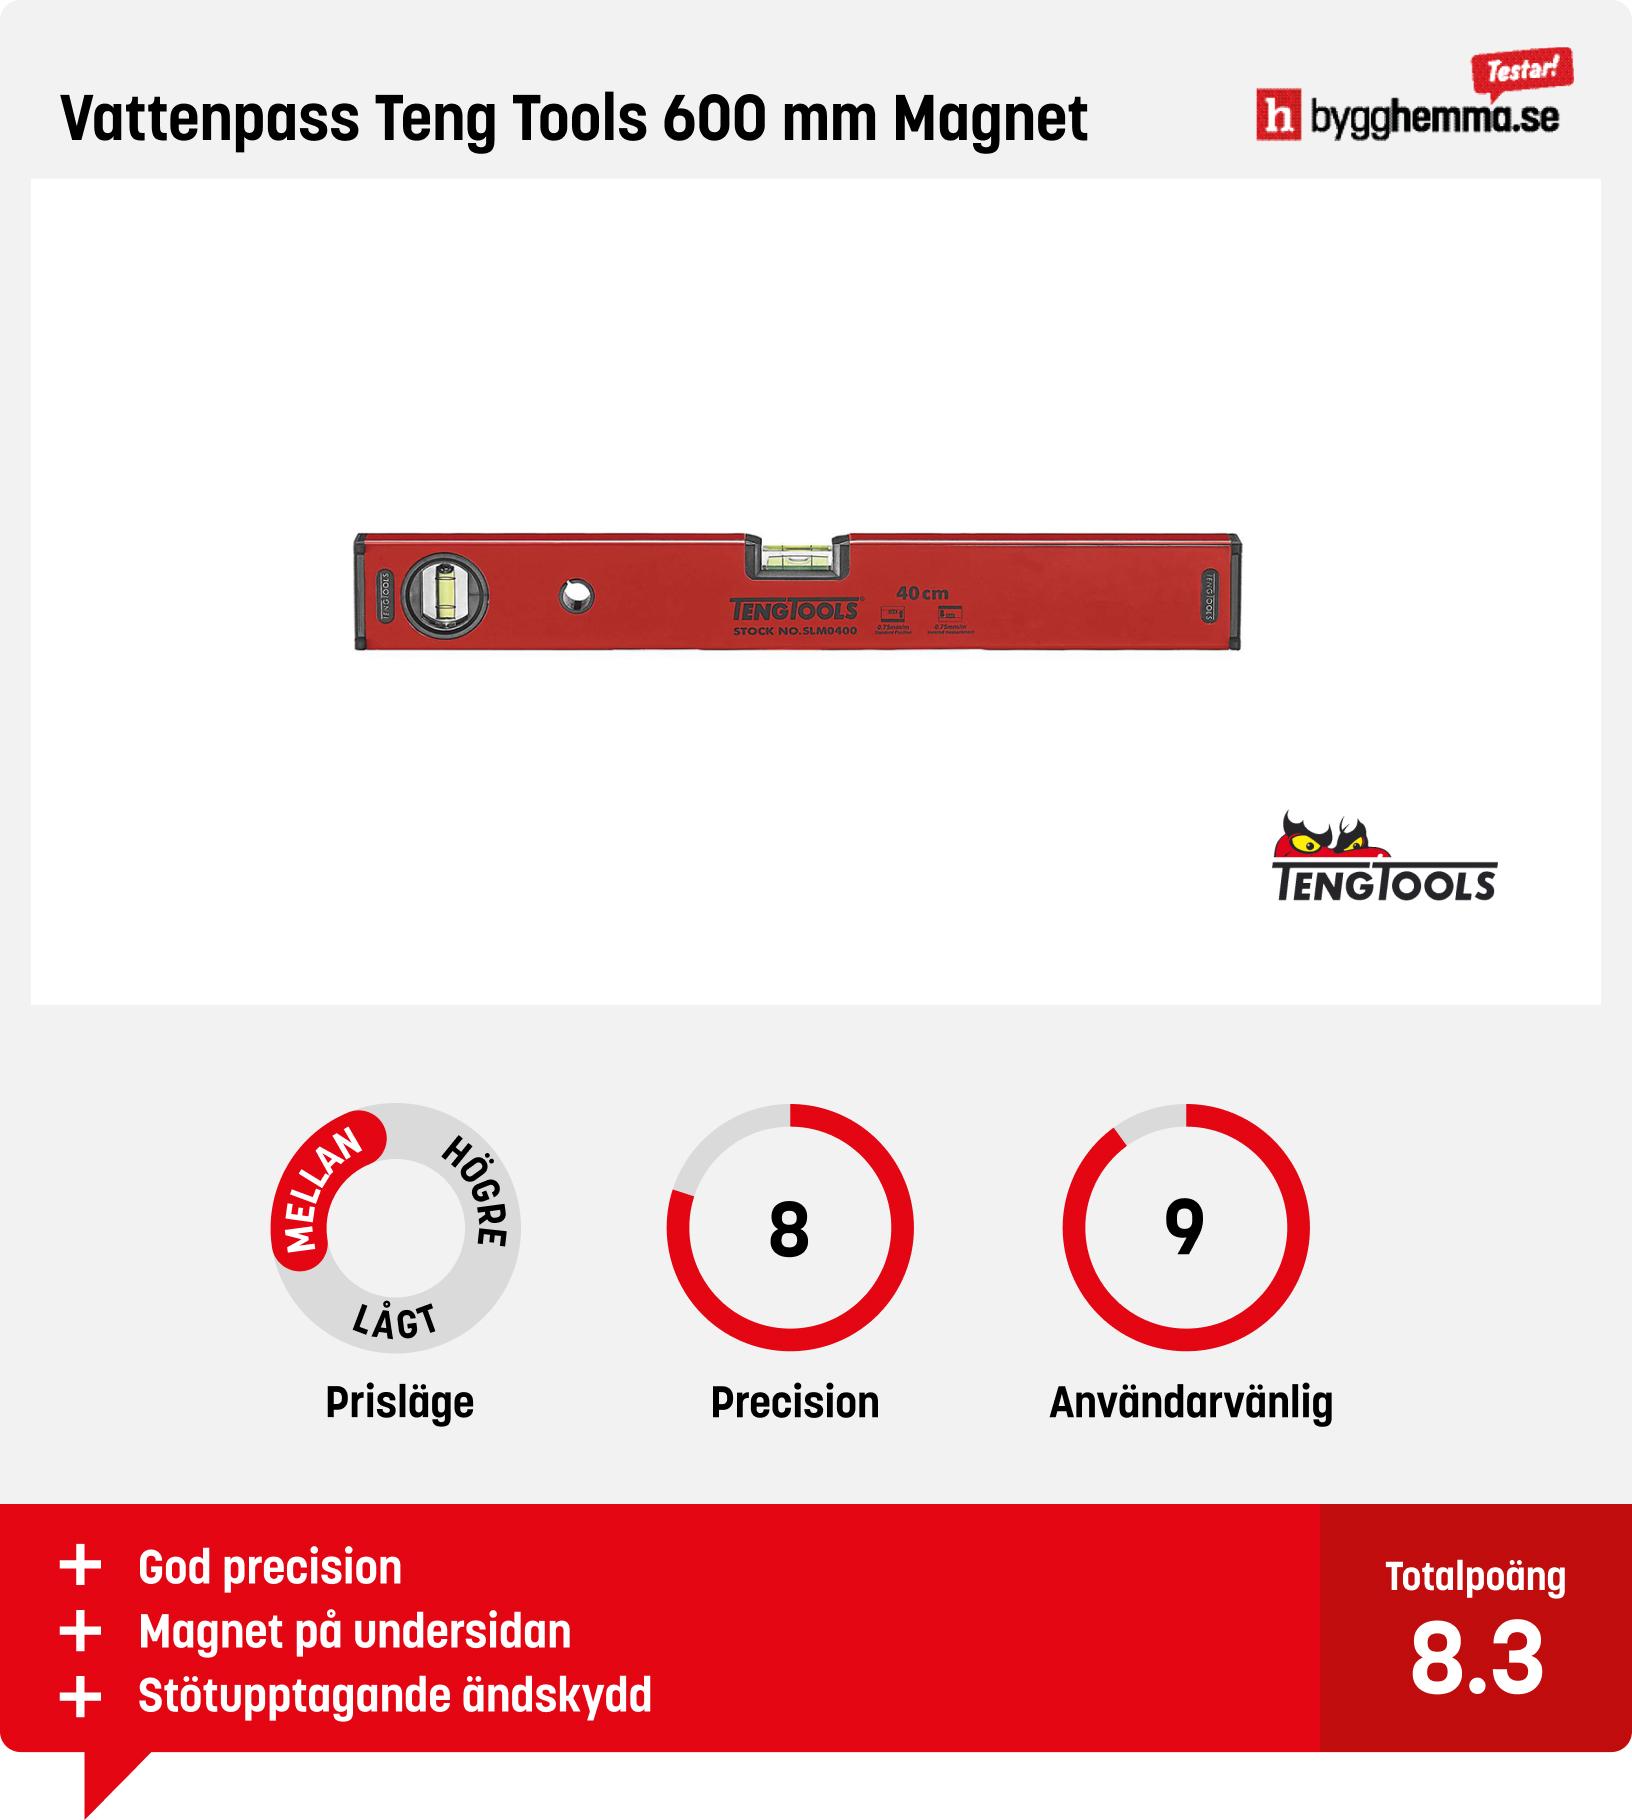 Vattenpass bäst i test - Vattenpass Teng Tools 600 mm Magnet